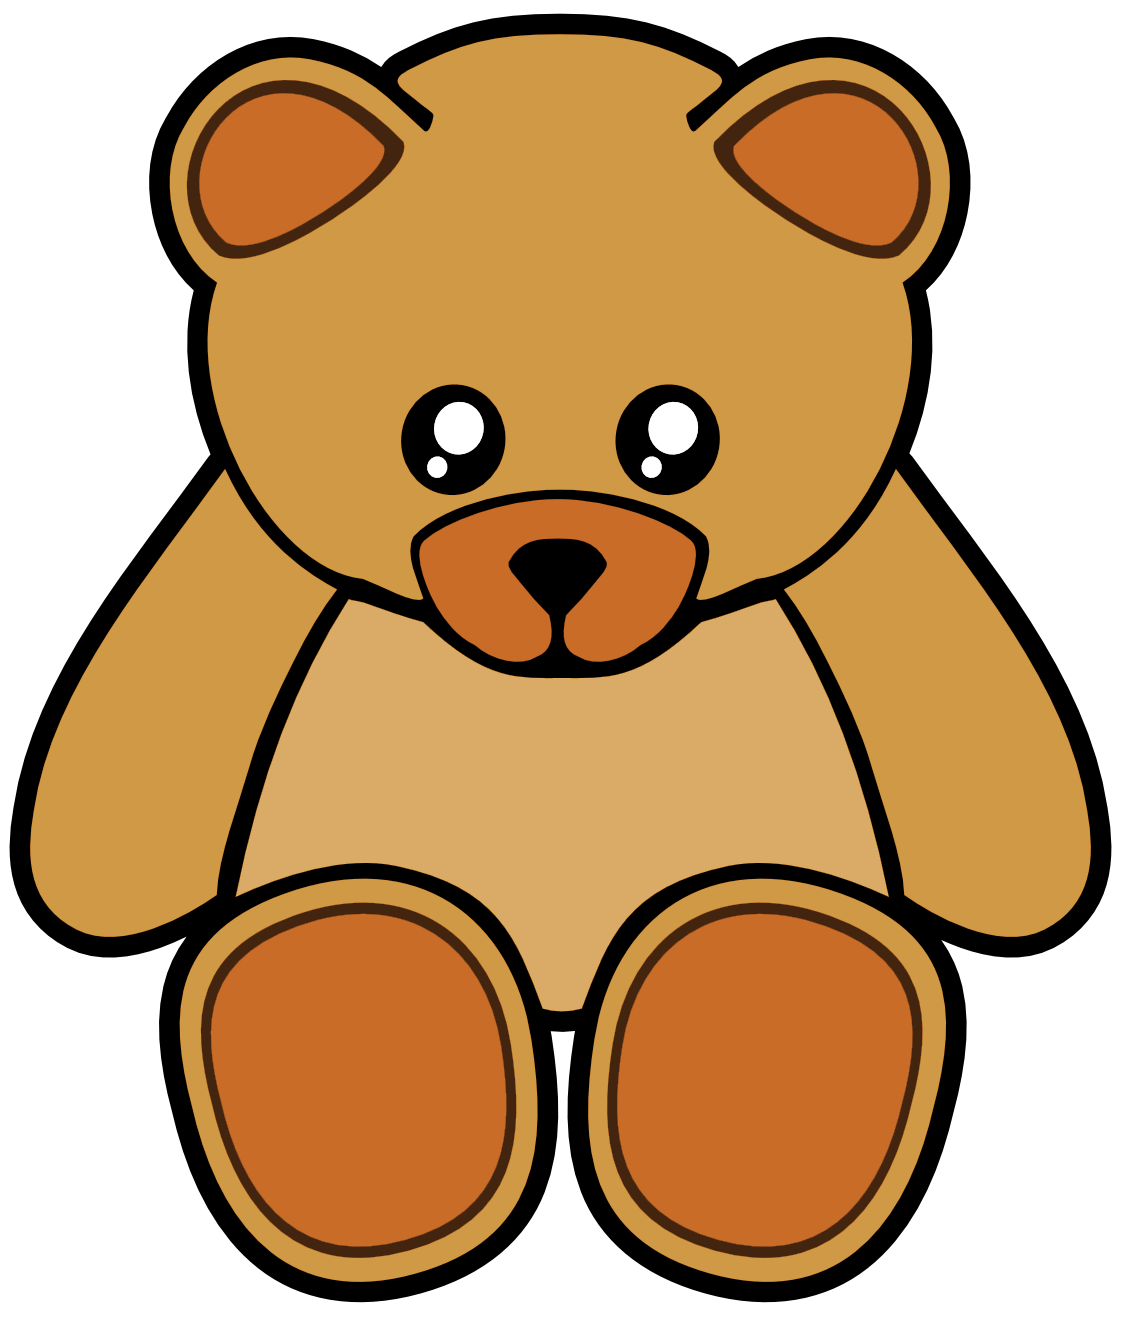 Cute bear teddy bear clip art on teddy bears clip art and bears clipartwiz